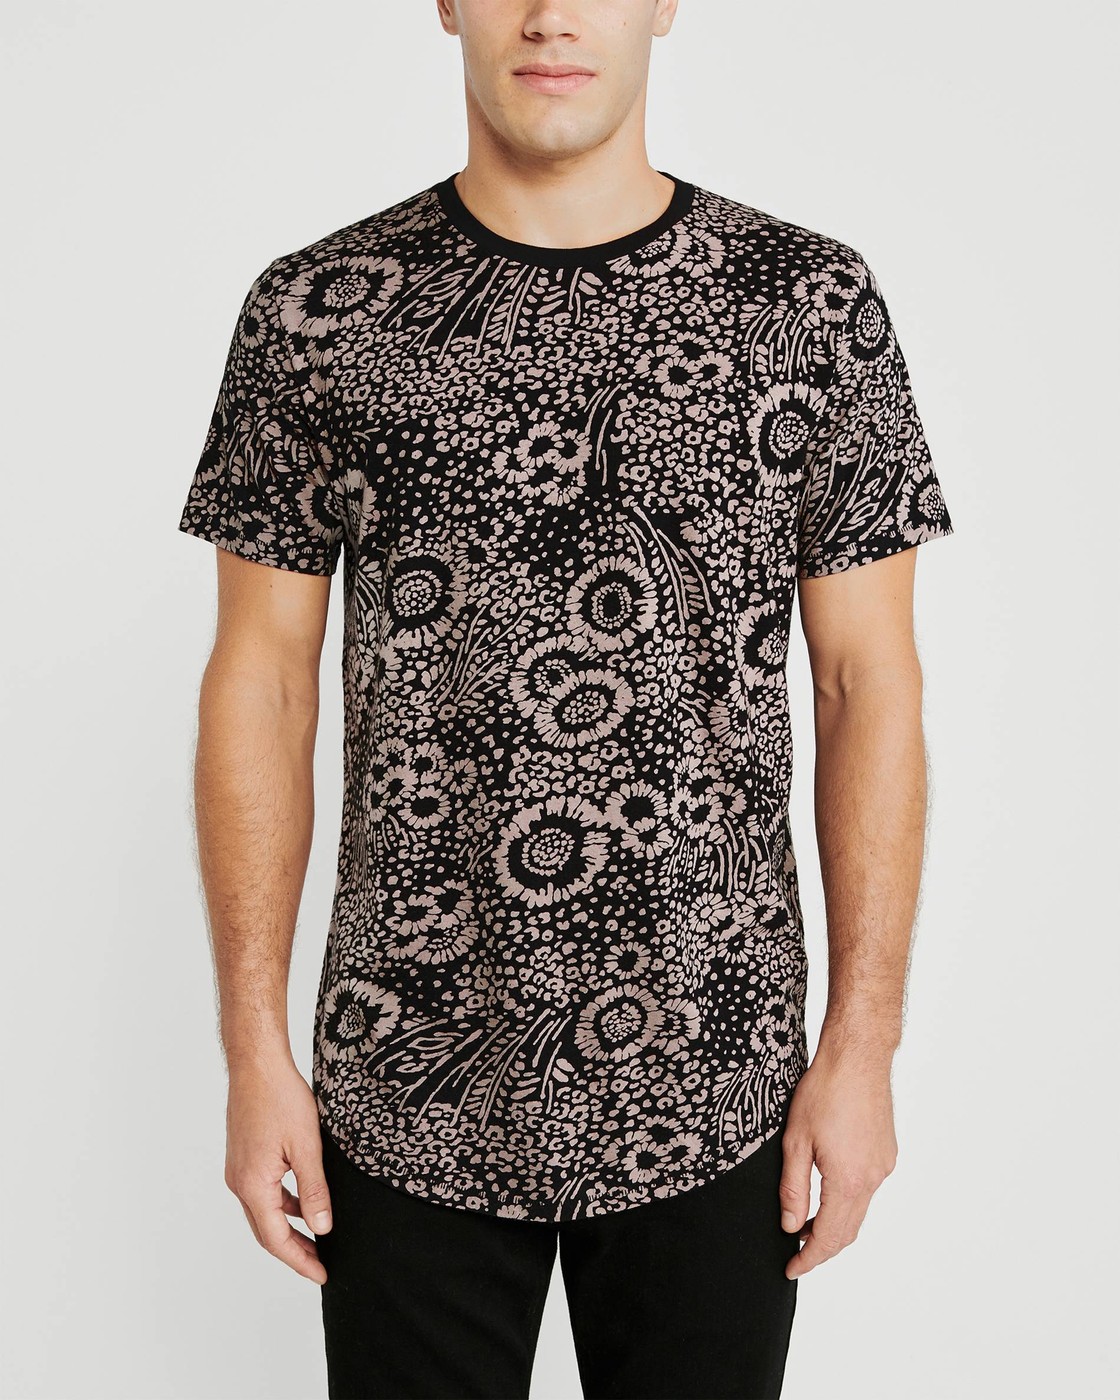 Черная футболка - мужская футболка Abercrombie & Fitch, M, M